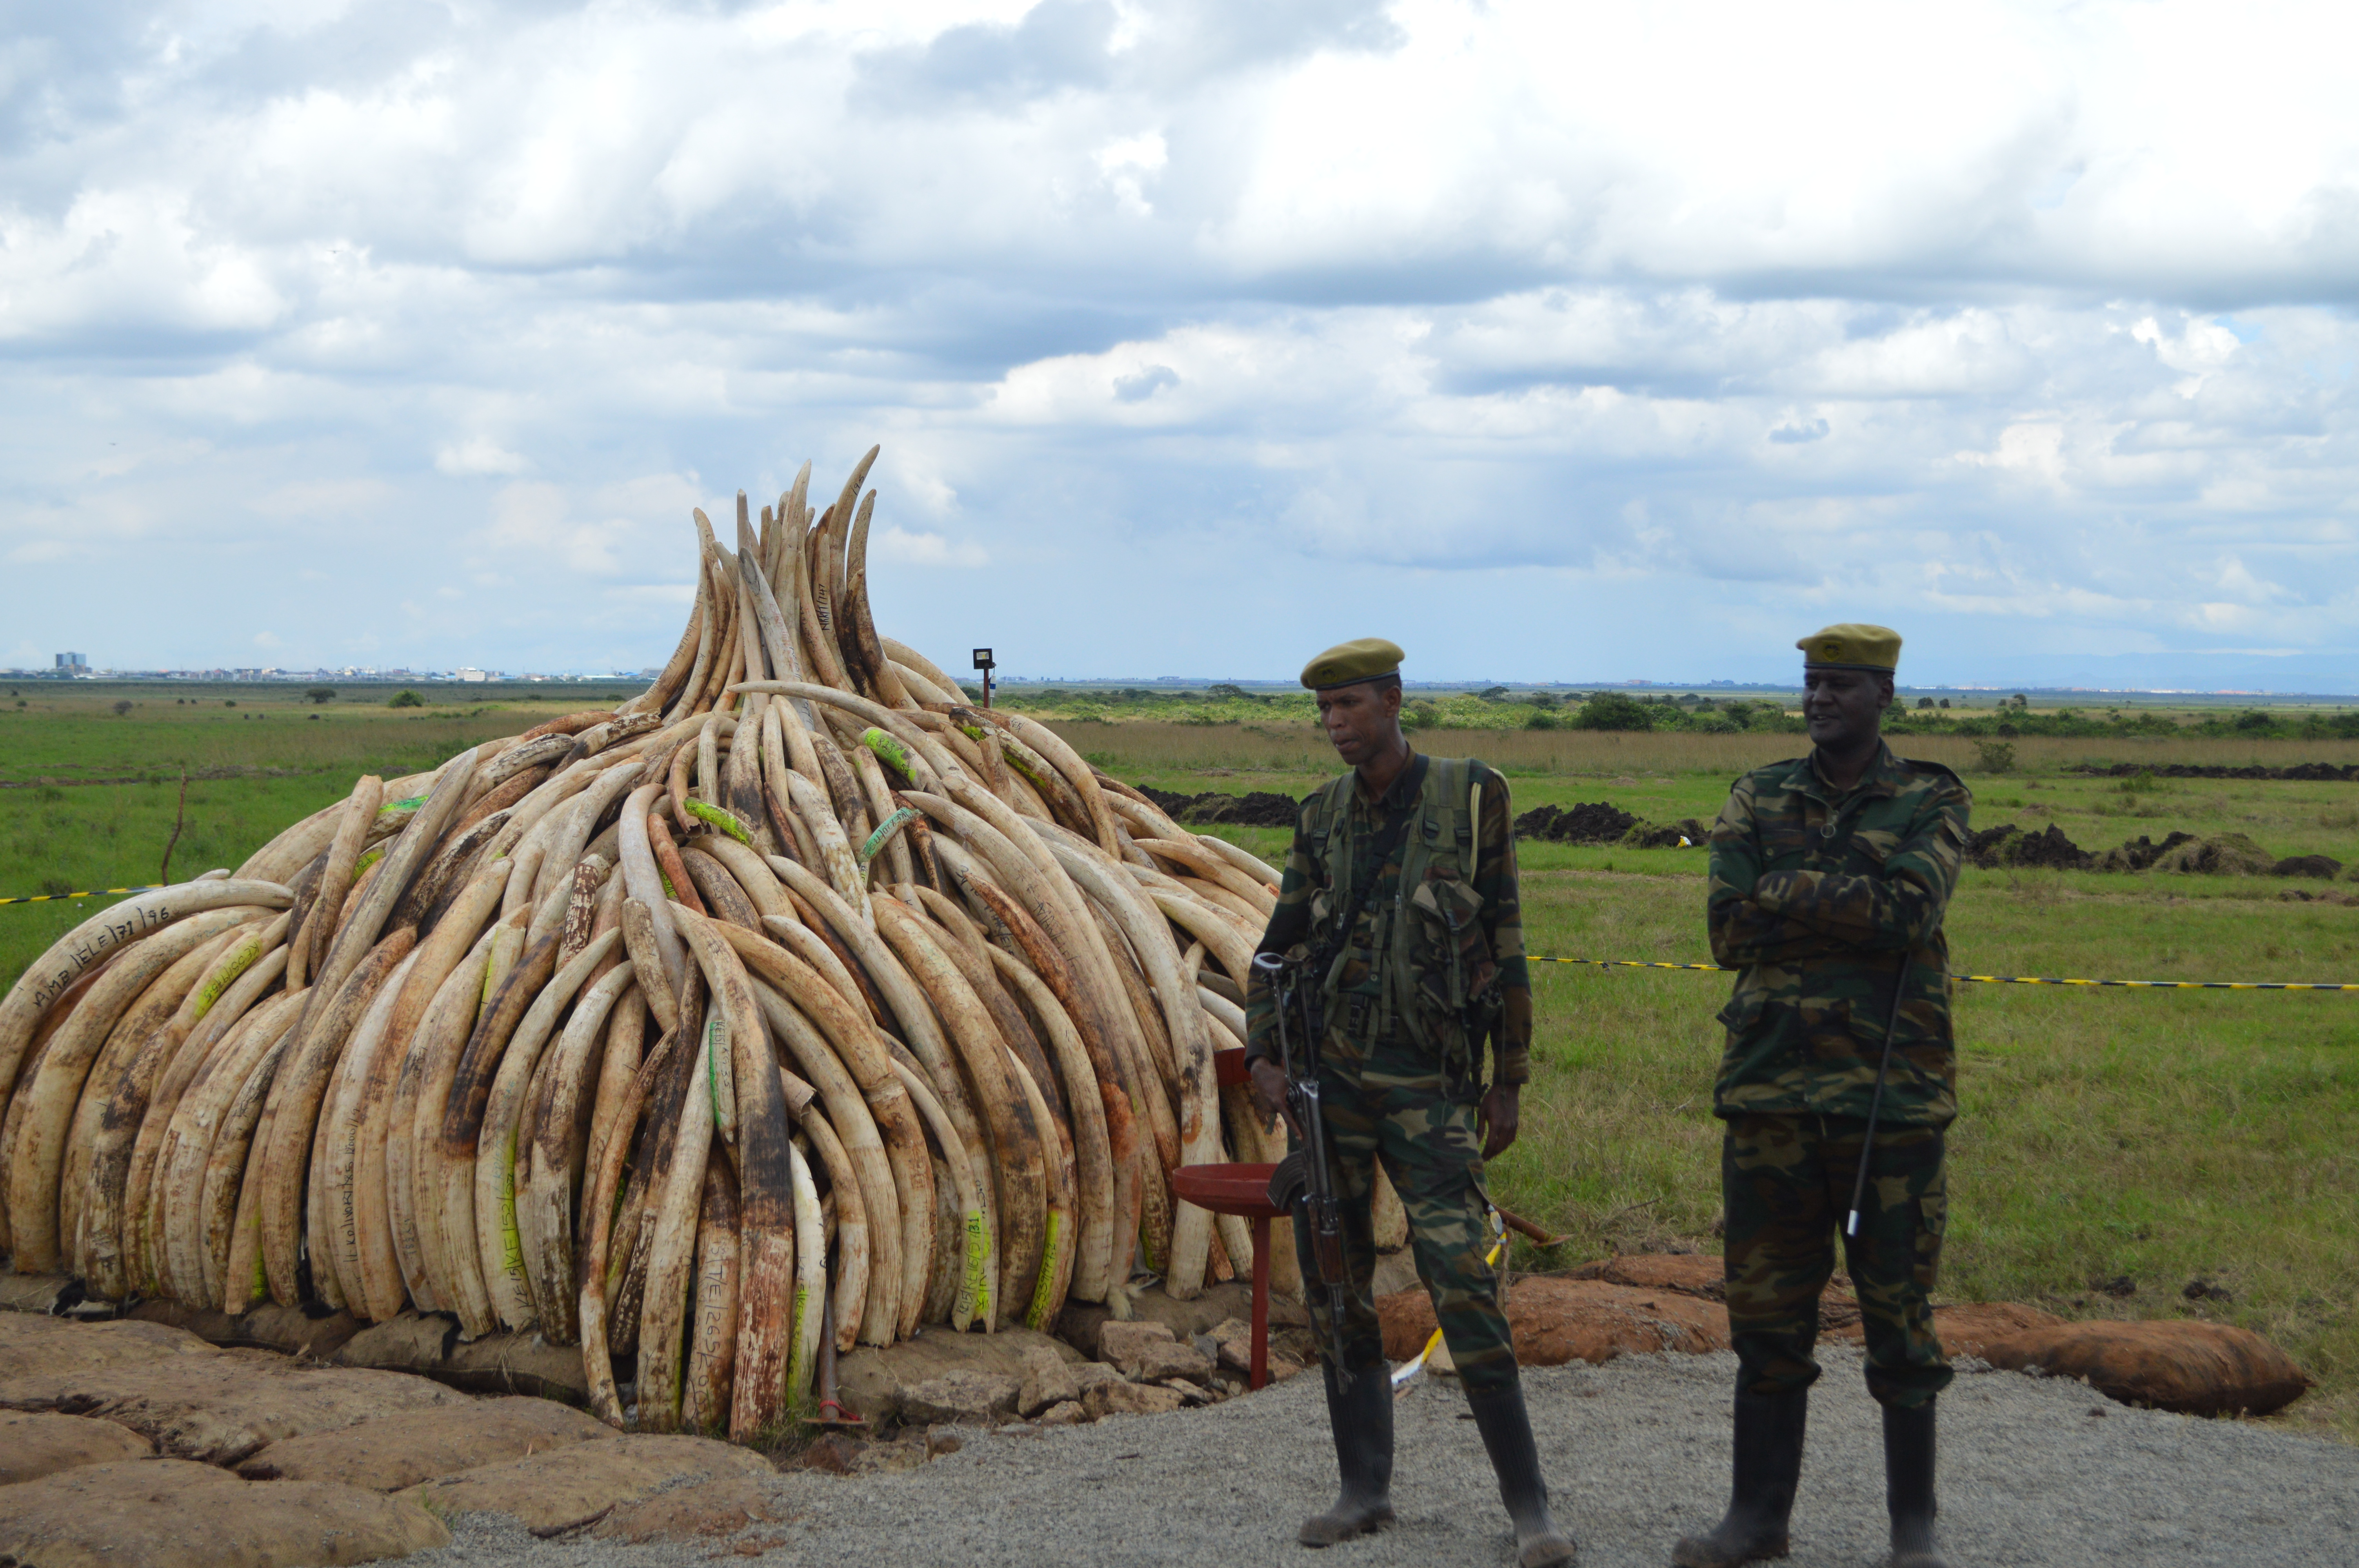 In Kenya, ivory tusks burned to deter poachers